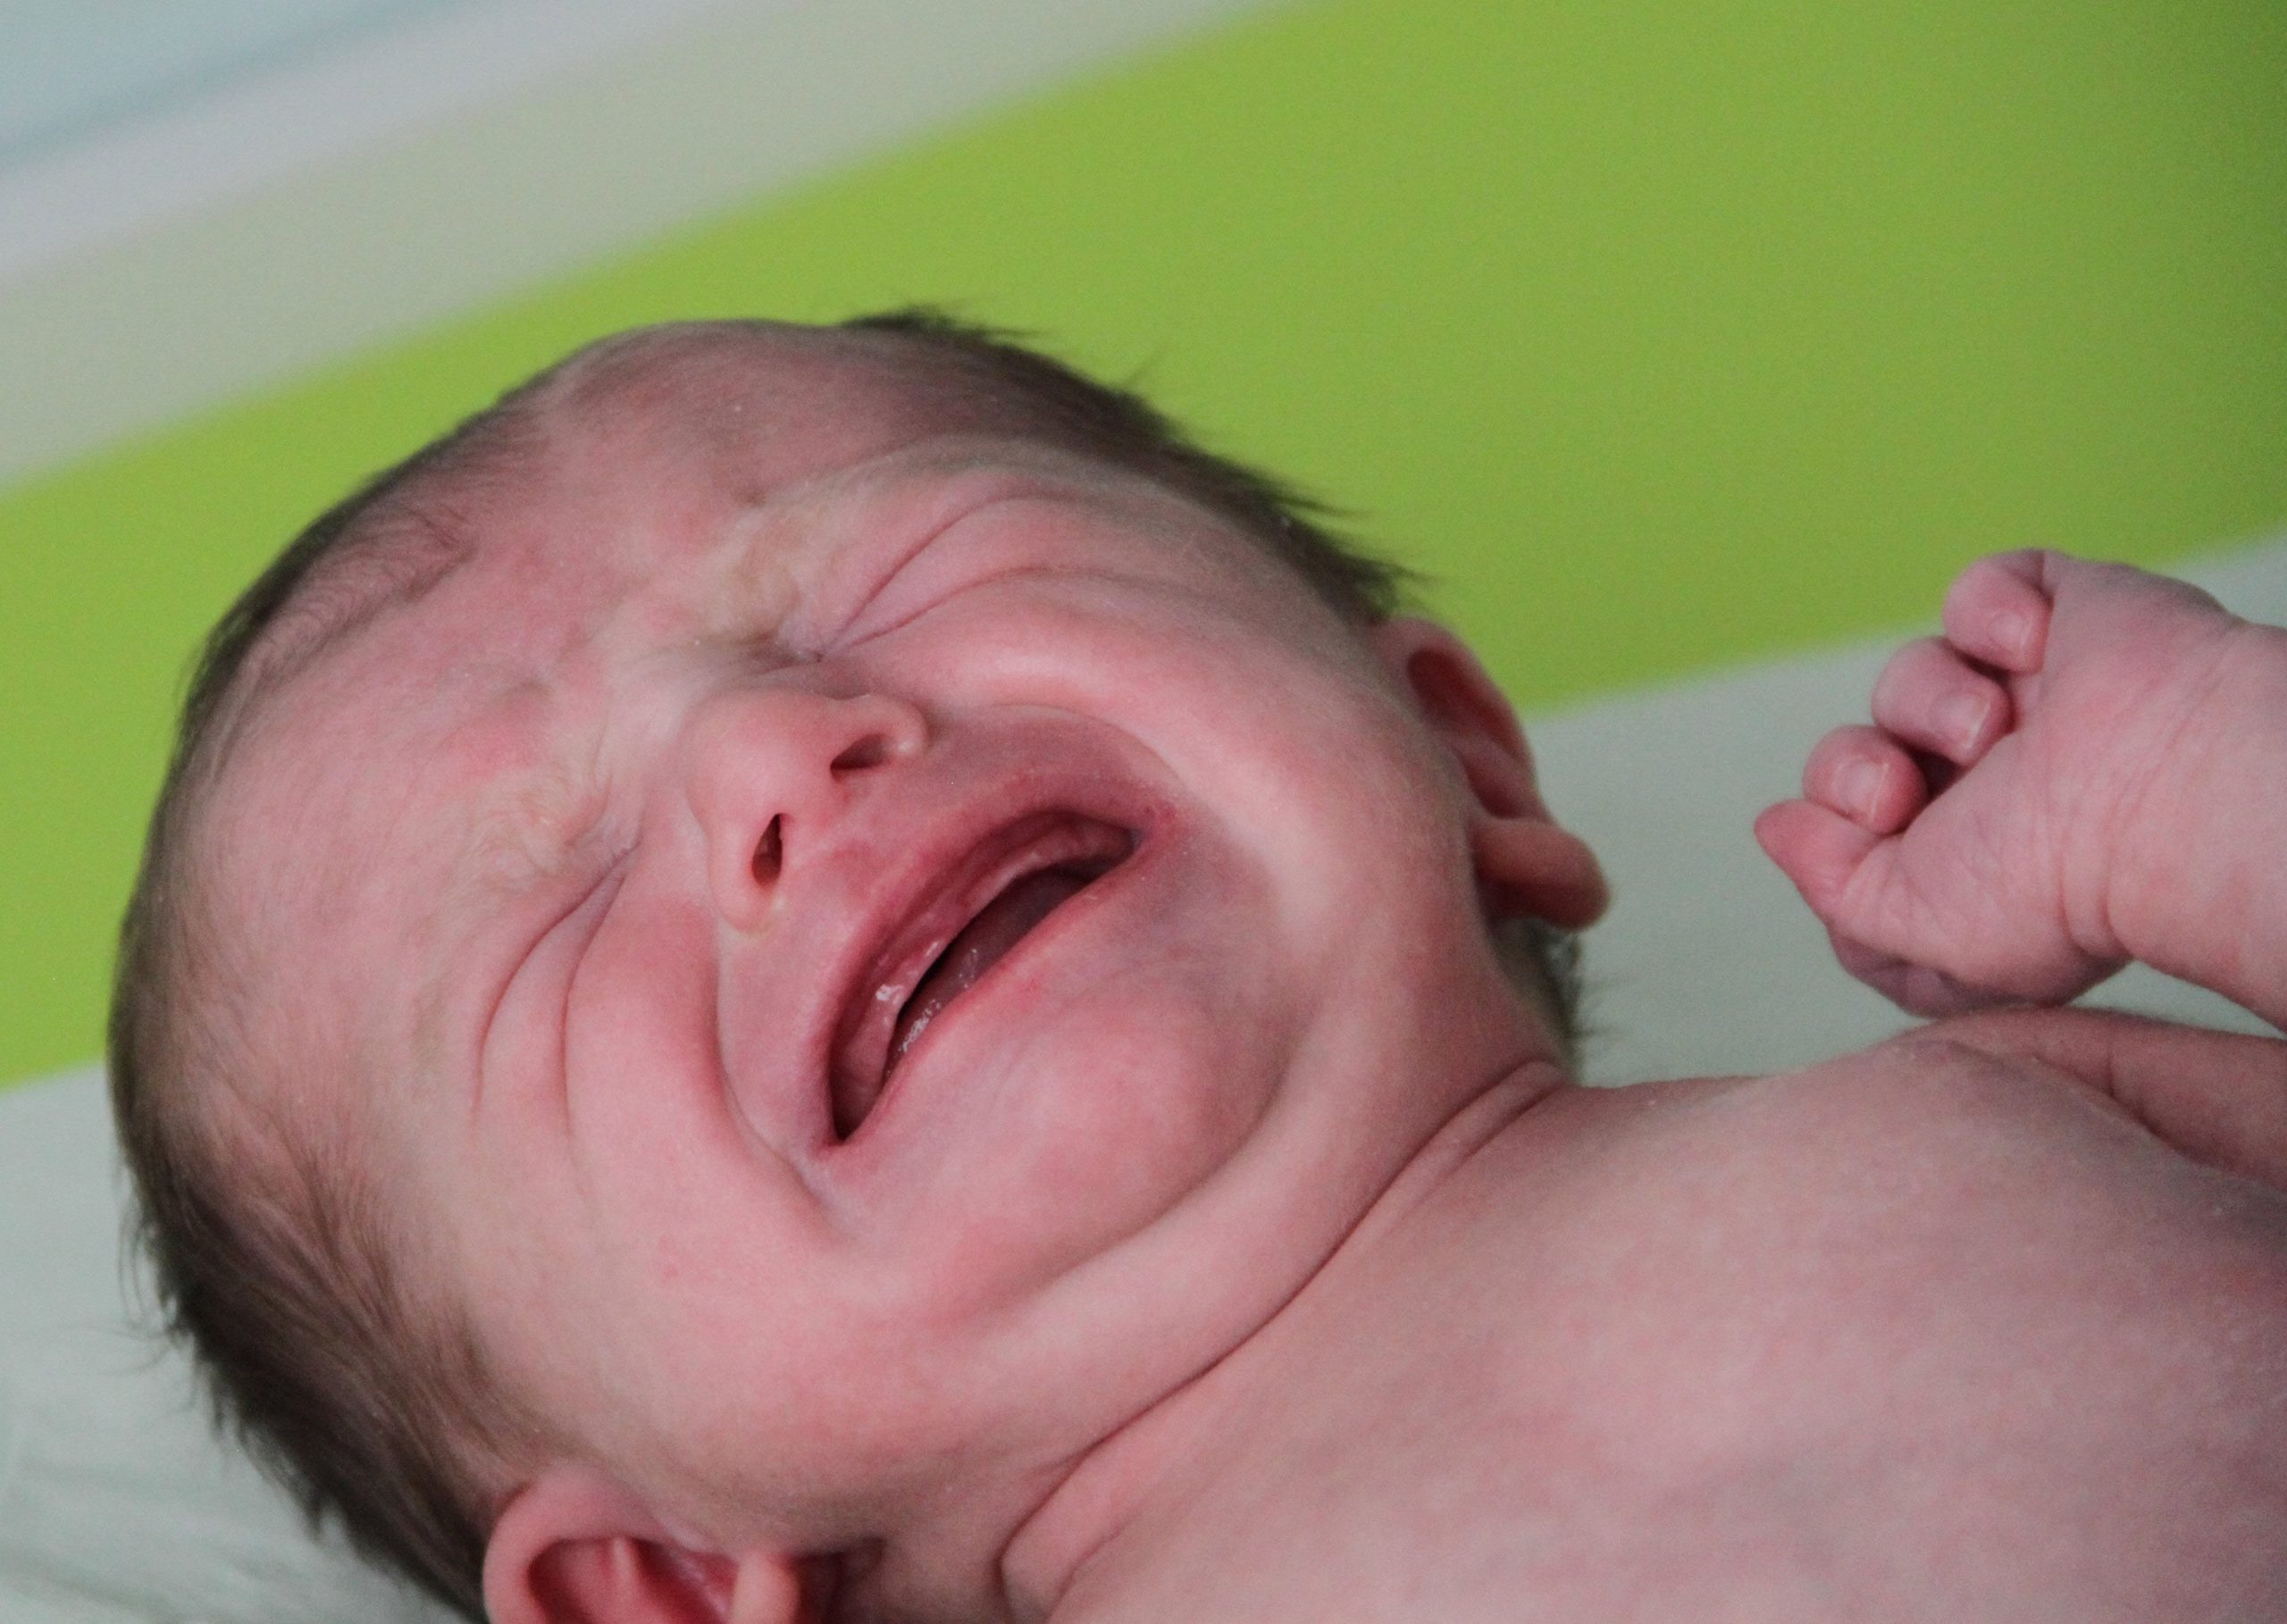 Pourquoi les bébés pleurent-ils souvent ?